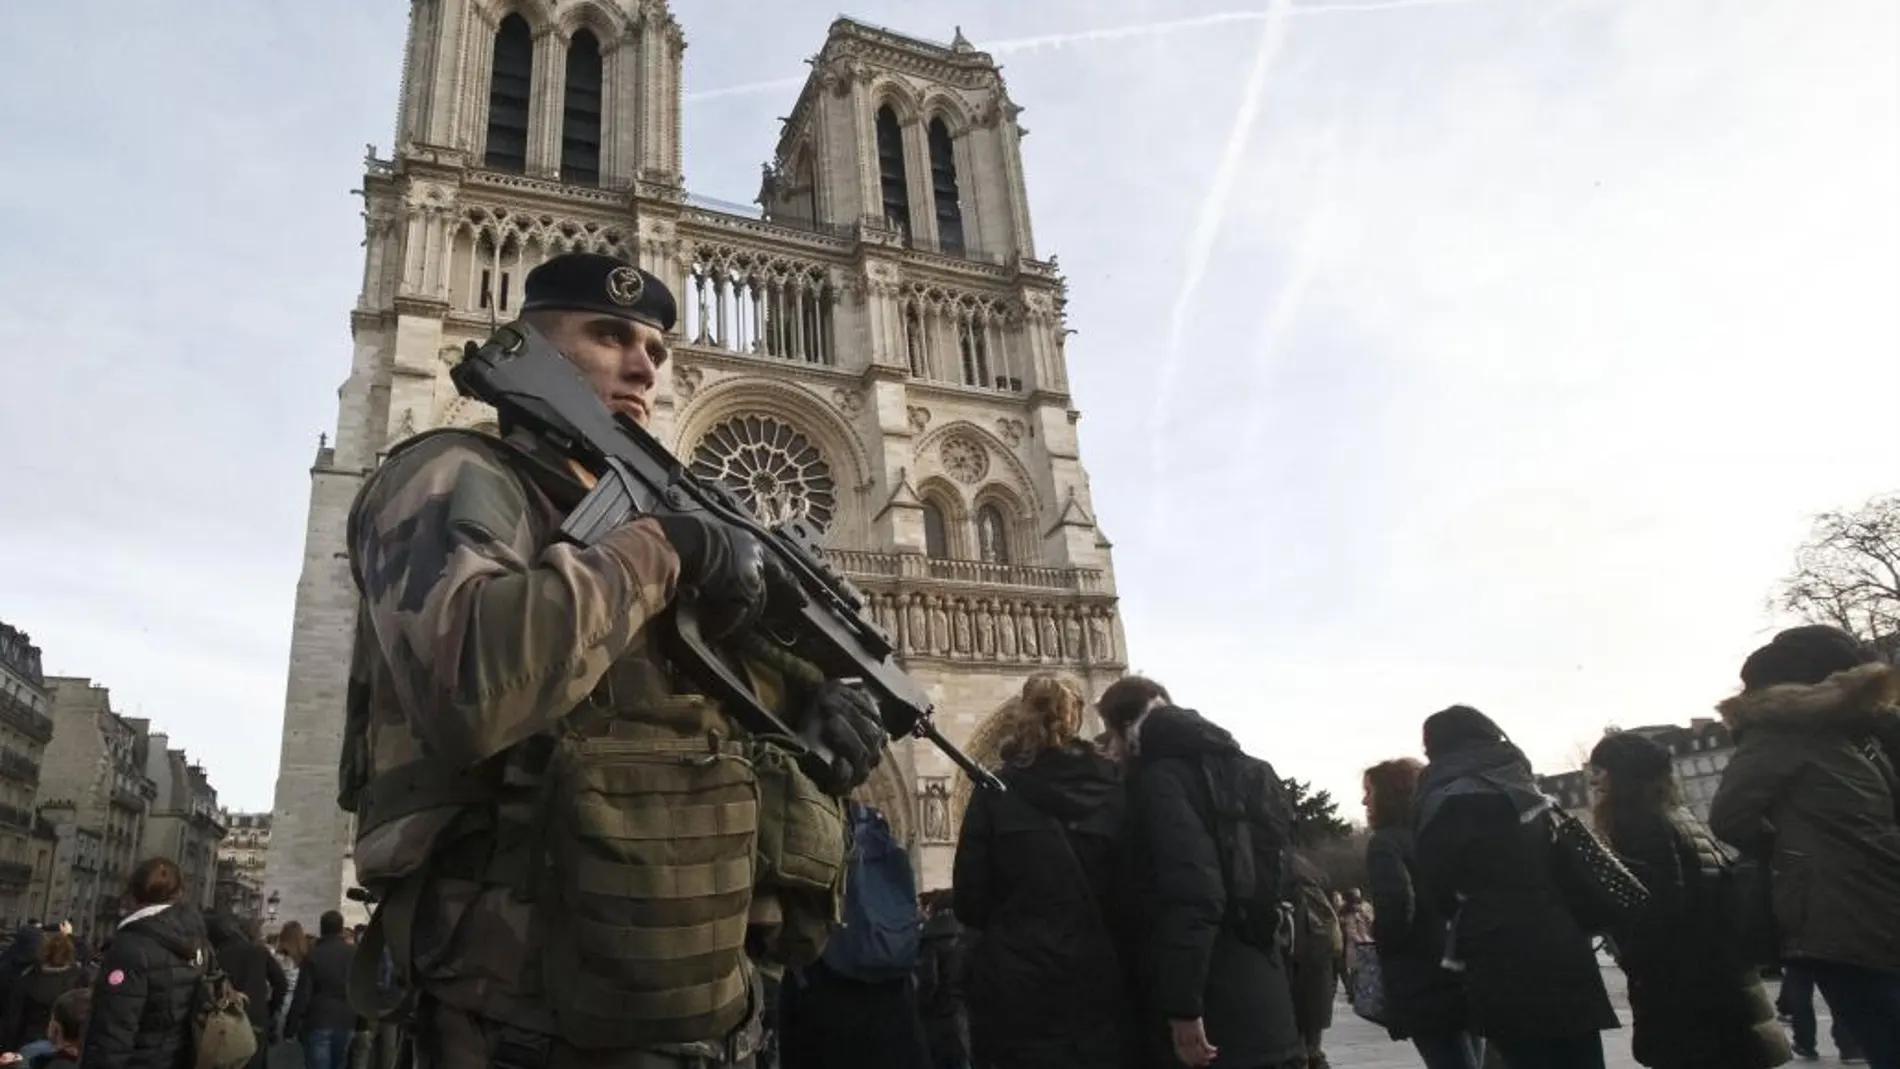 Francia se encuentra en estado de emergencia desde los atentados terroristas del 13 de noviembre de 2015